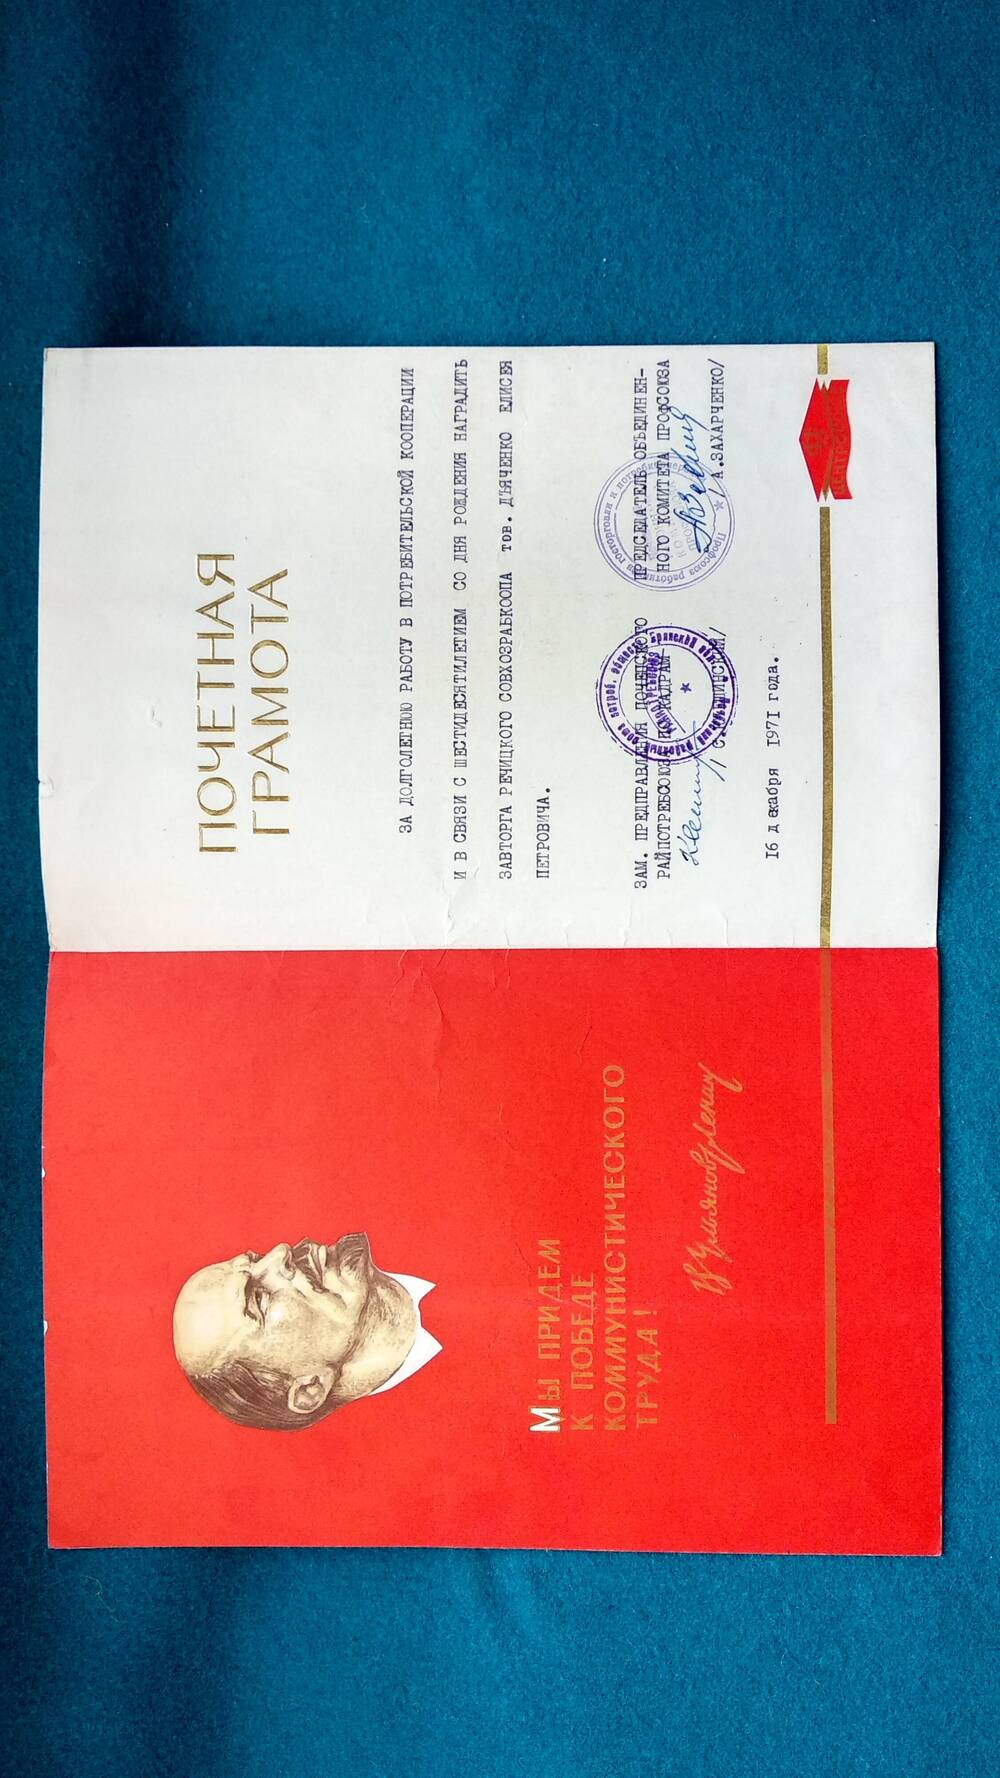 Грамота почетная Почепского Райпотребсоюза Дьяченко Е. П. за долголетнюю работу в потребительской кооперации и в связи с 60-летием со дня рождения.